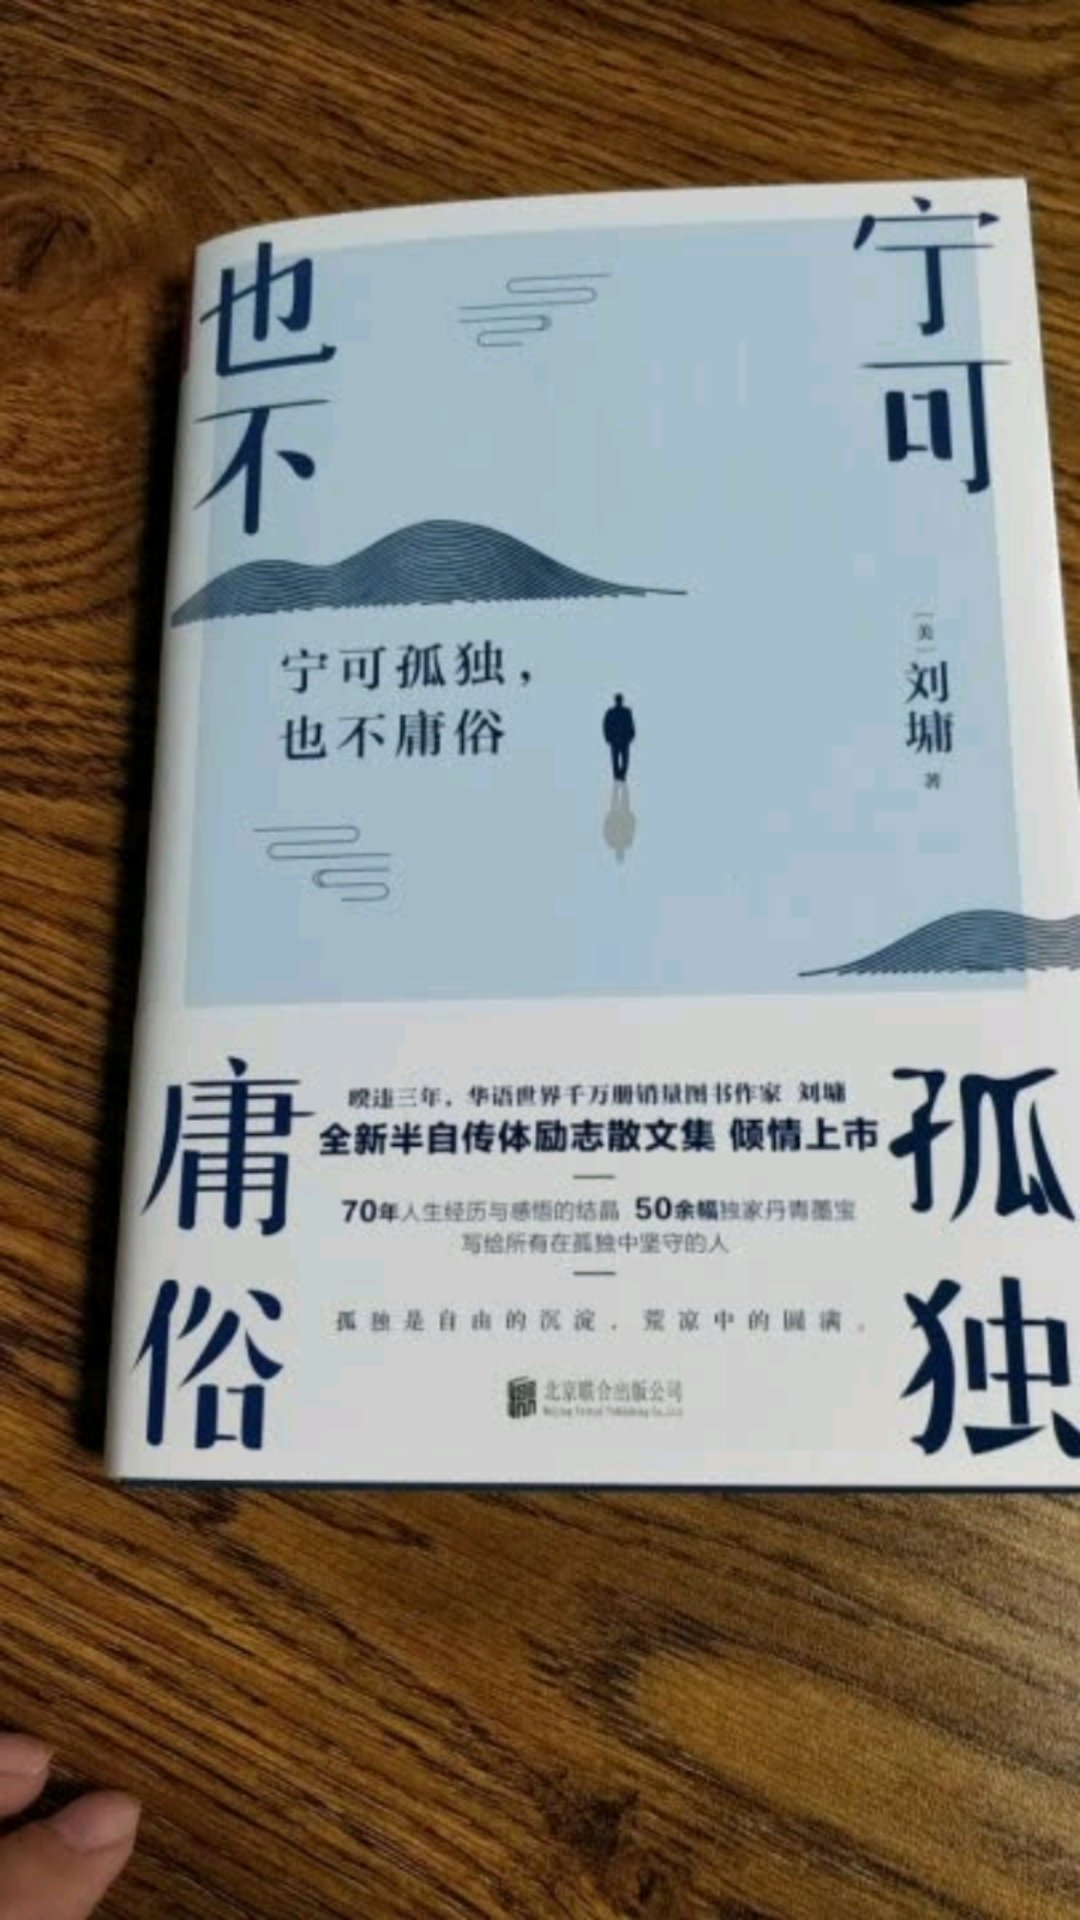 很喜欢刘墉先生的书，写的实用。